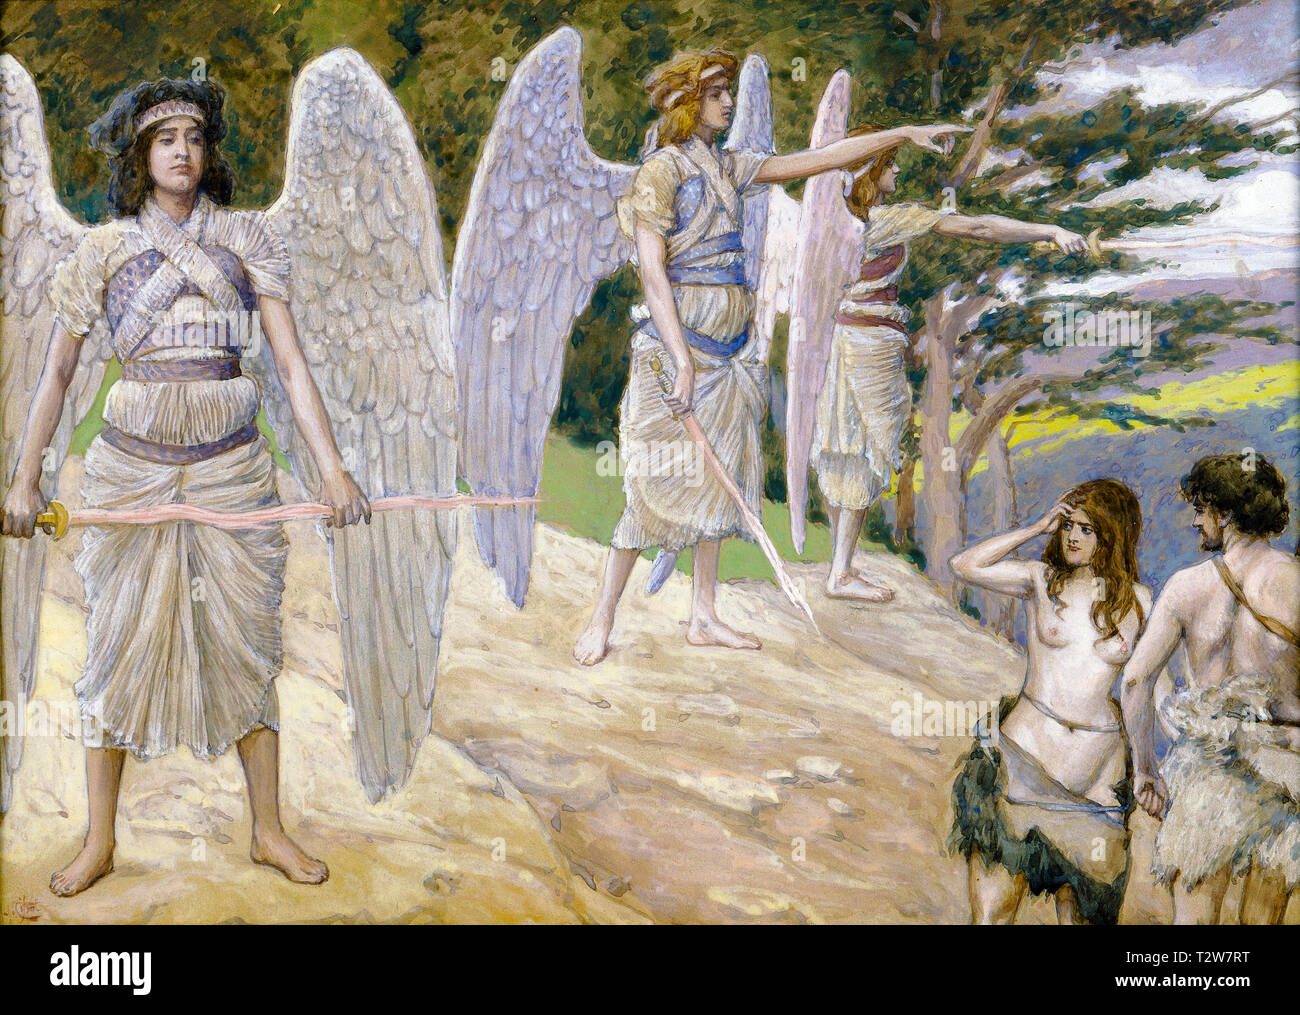 James Tissot, Adam et Eve chassés du paradis, peinture, c. 1896 Banque D'Images